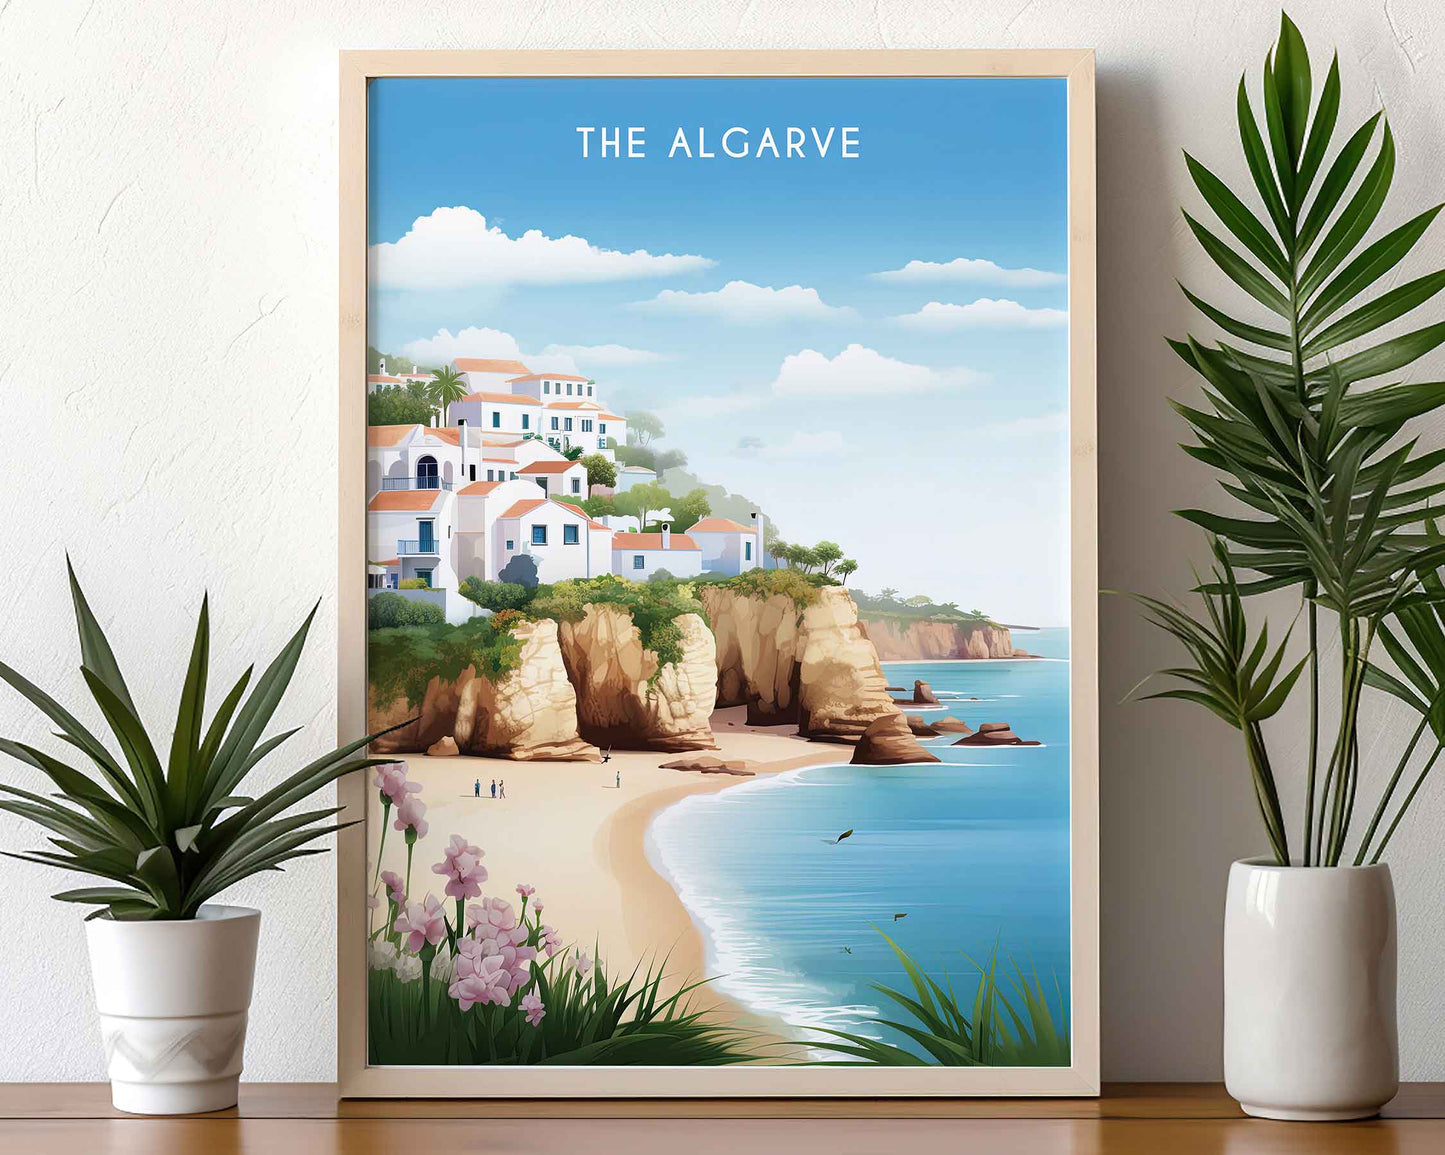 Framed Image of Algarve Portugal Travel Posters Wall Art Illustration Prints